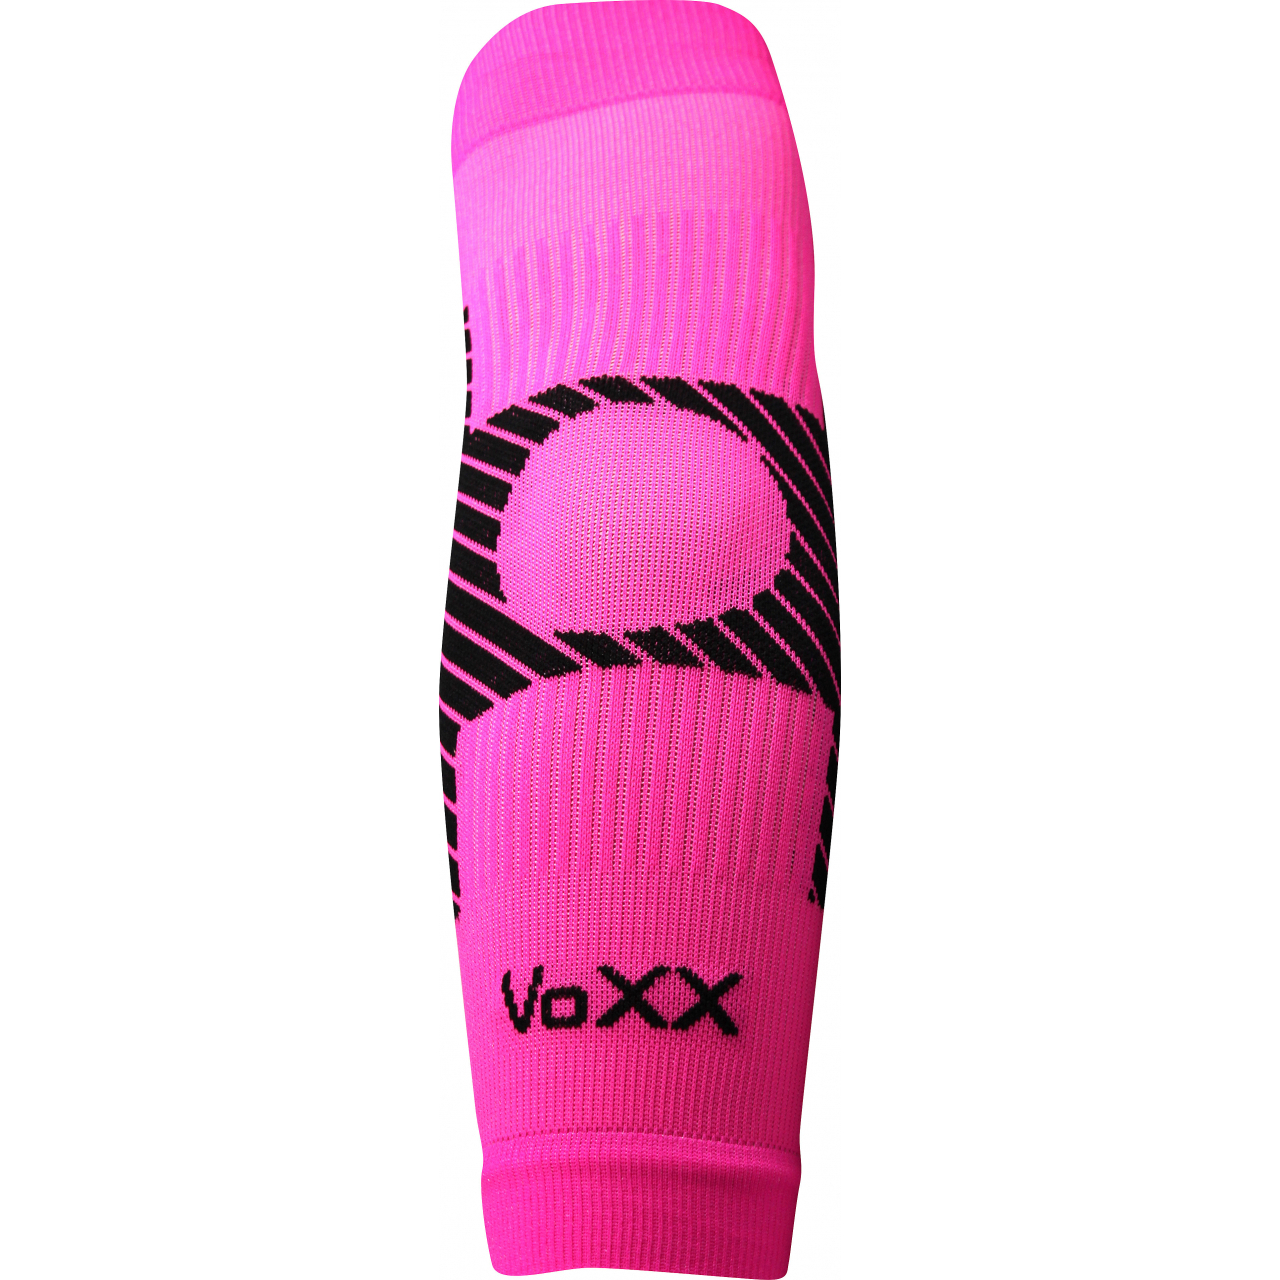 Návlek kompresní Voxx Protect loket - růžový svítící, S/M